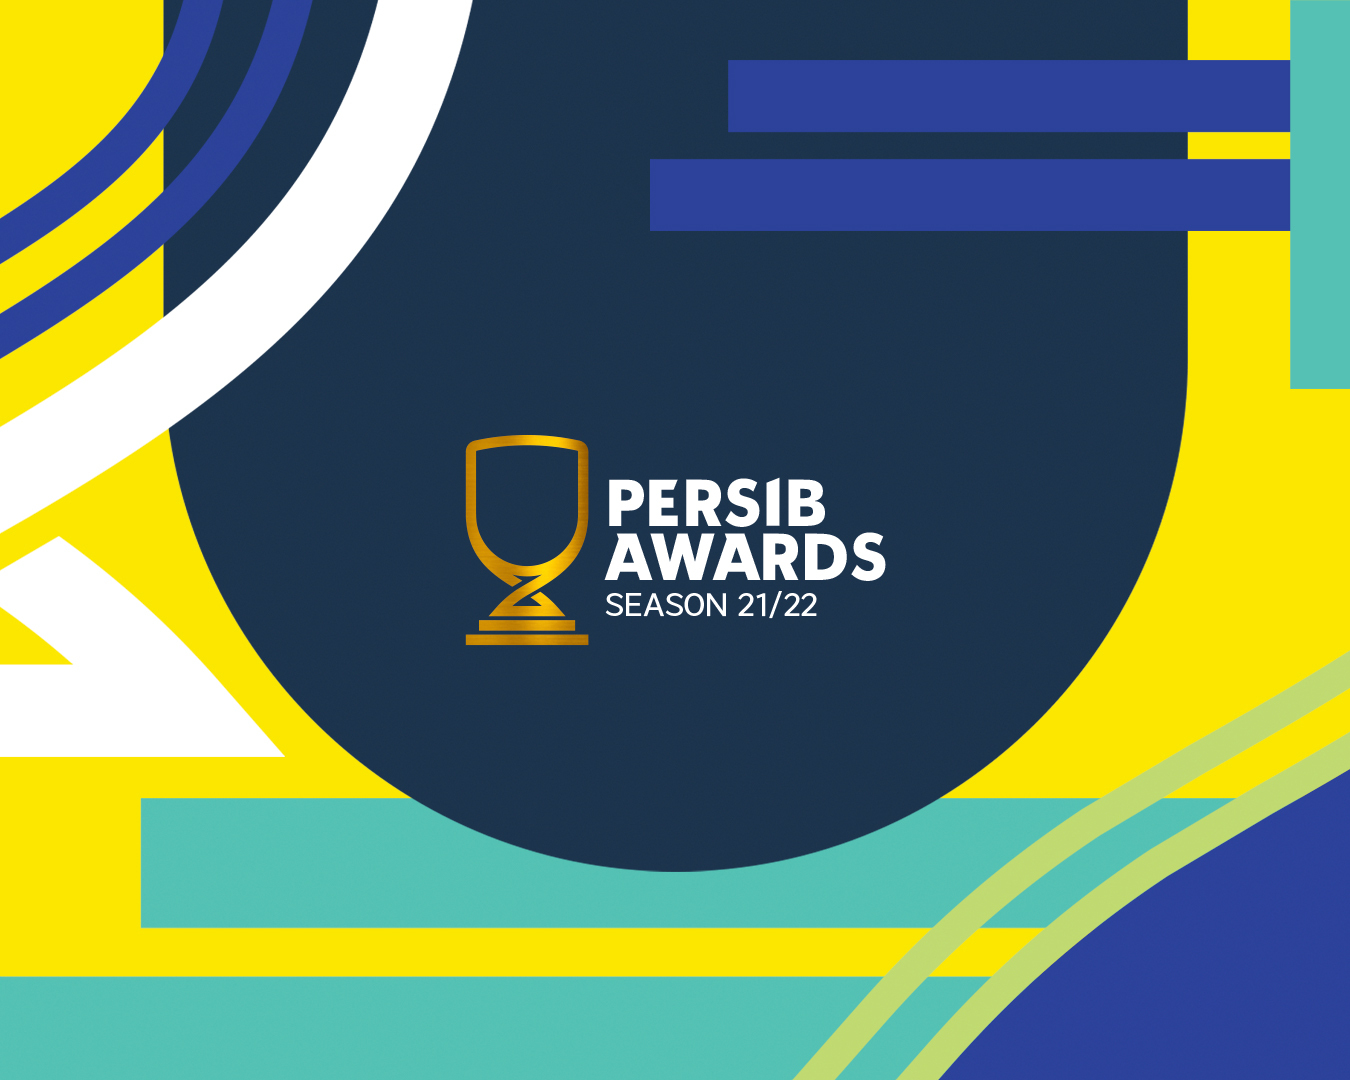 Persib Award Bakal Digelar, Yuk Voting Bobotoh!